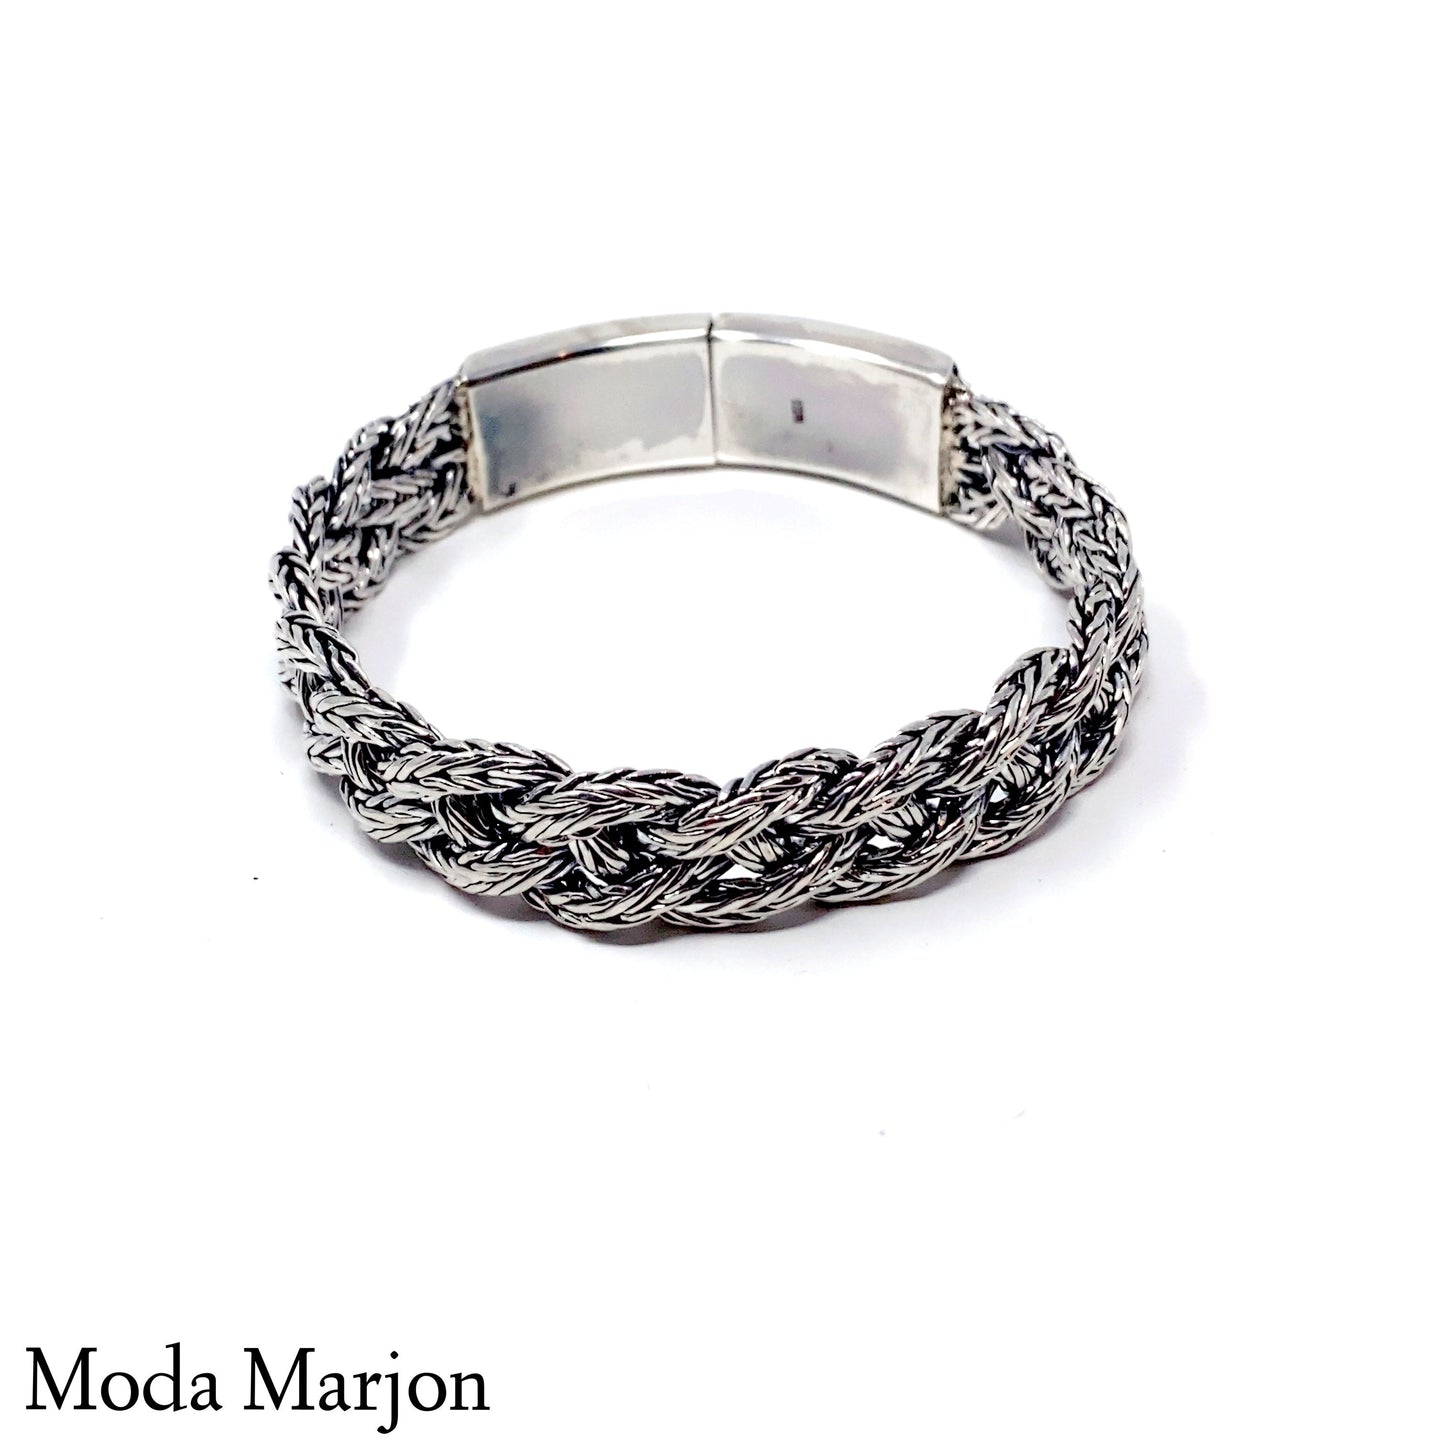 Braided Chain Bracelet - Moda Marjon 